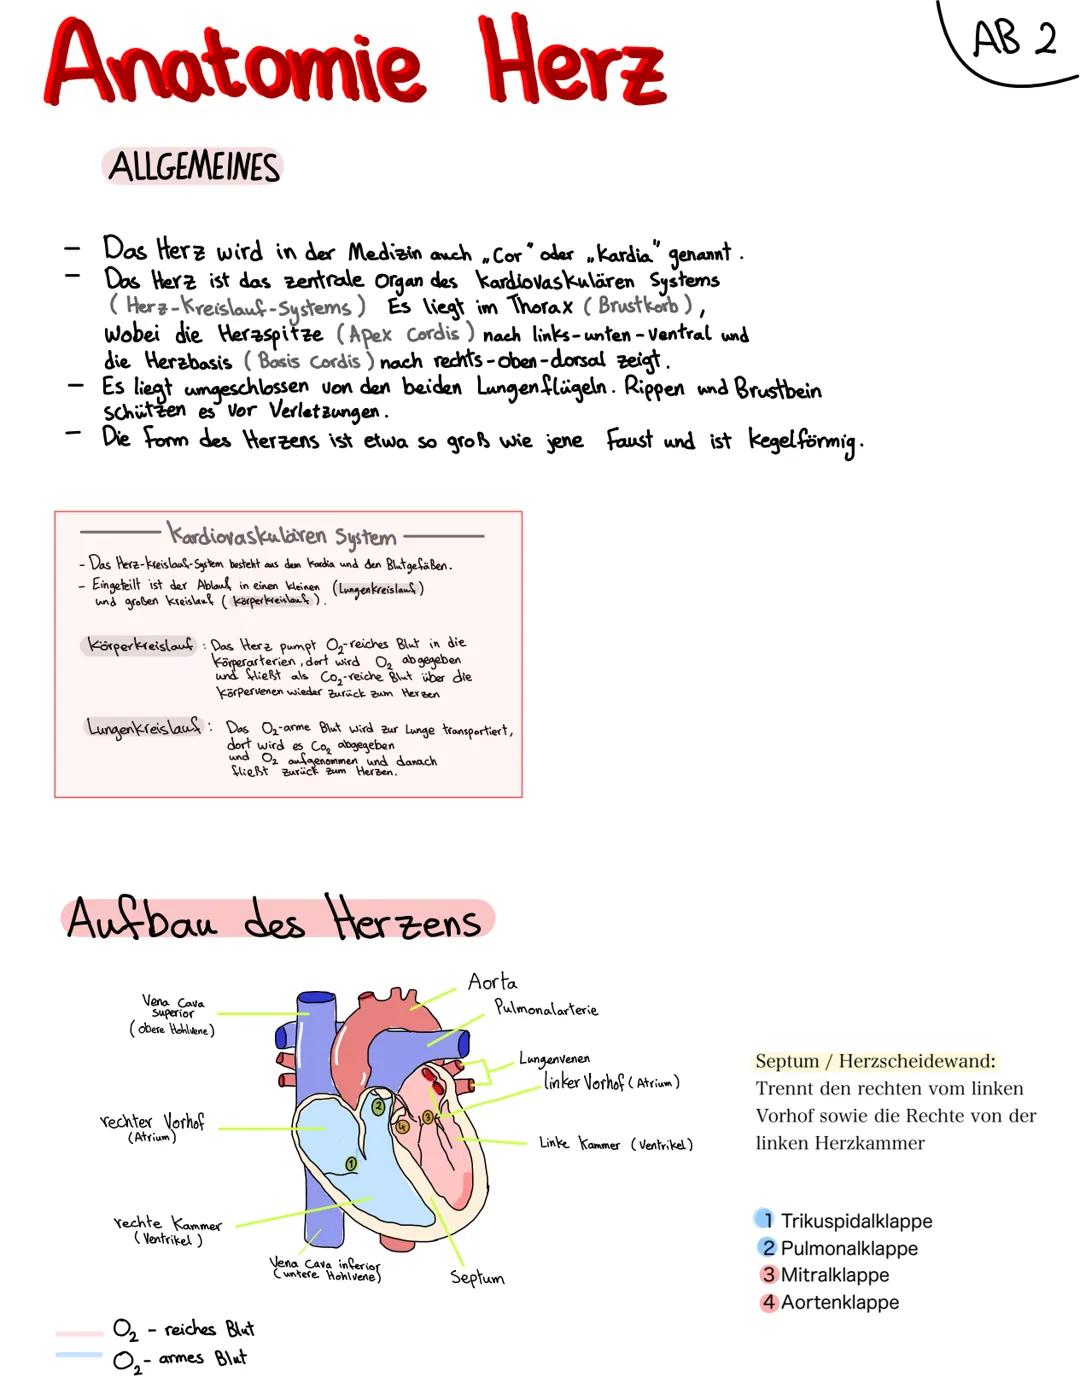 Anatomie Herz
ALLGEMEINES
Das Herz wird in der Medizin auch ,Cor" oder "Kardia" genannt.
Das Herz ist das zentrale Organ des kardiovaskuläre